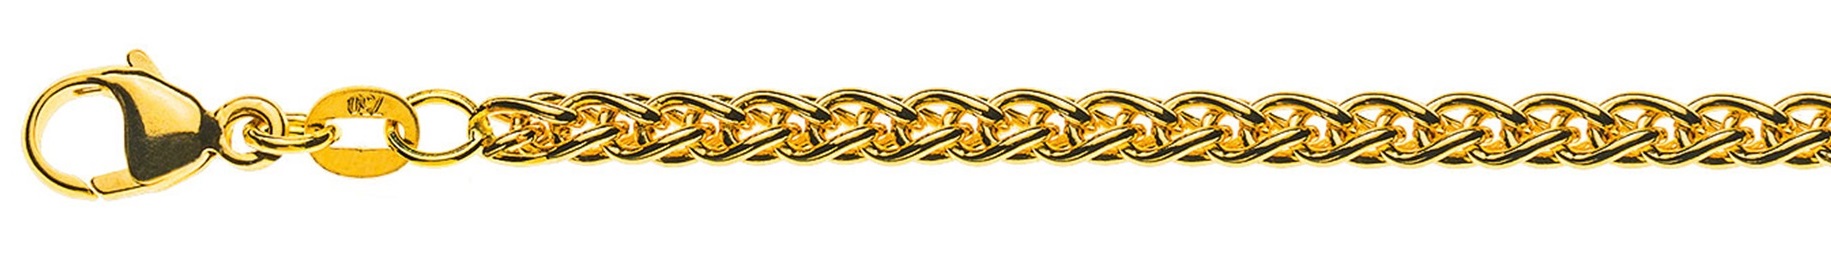 AURONOS Prestige Halskette Gelbgold 18K Zopfkette 60cm 3.3mm